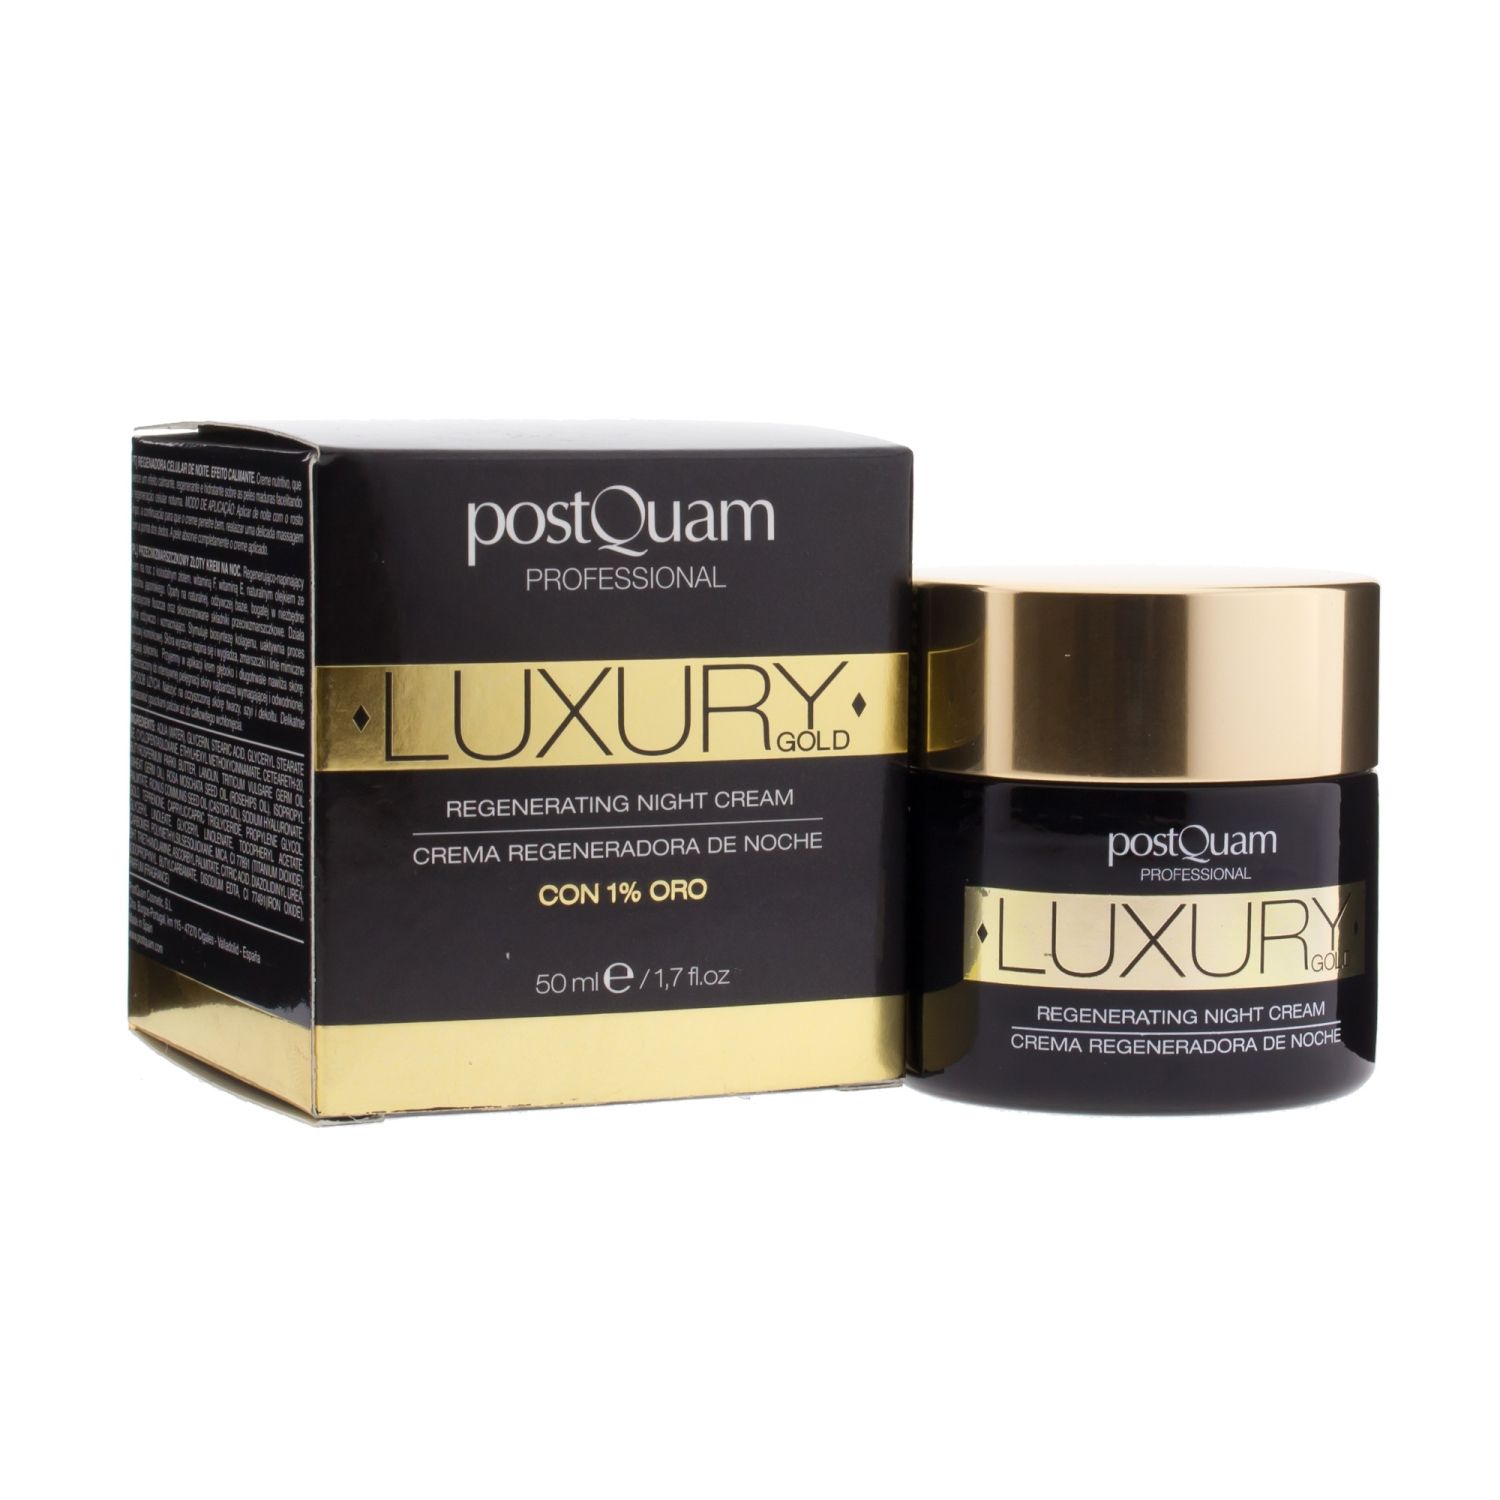 postquam luxury gold crema regeneradora de noche 50ml